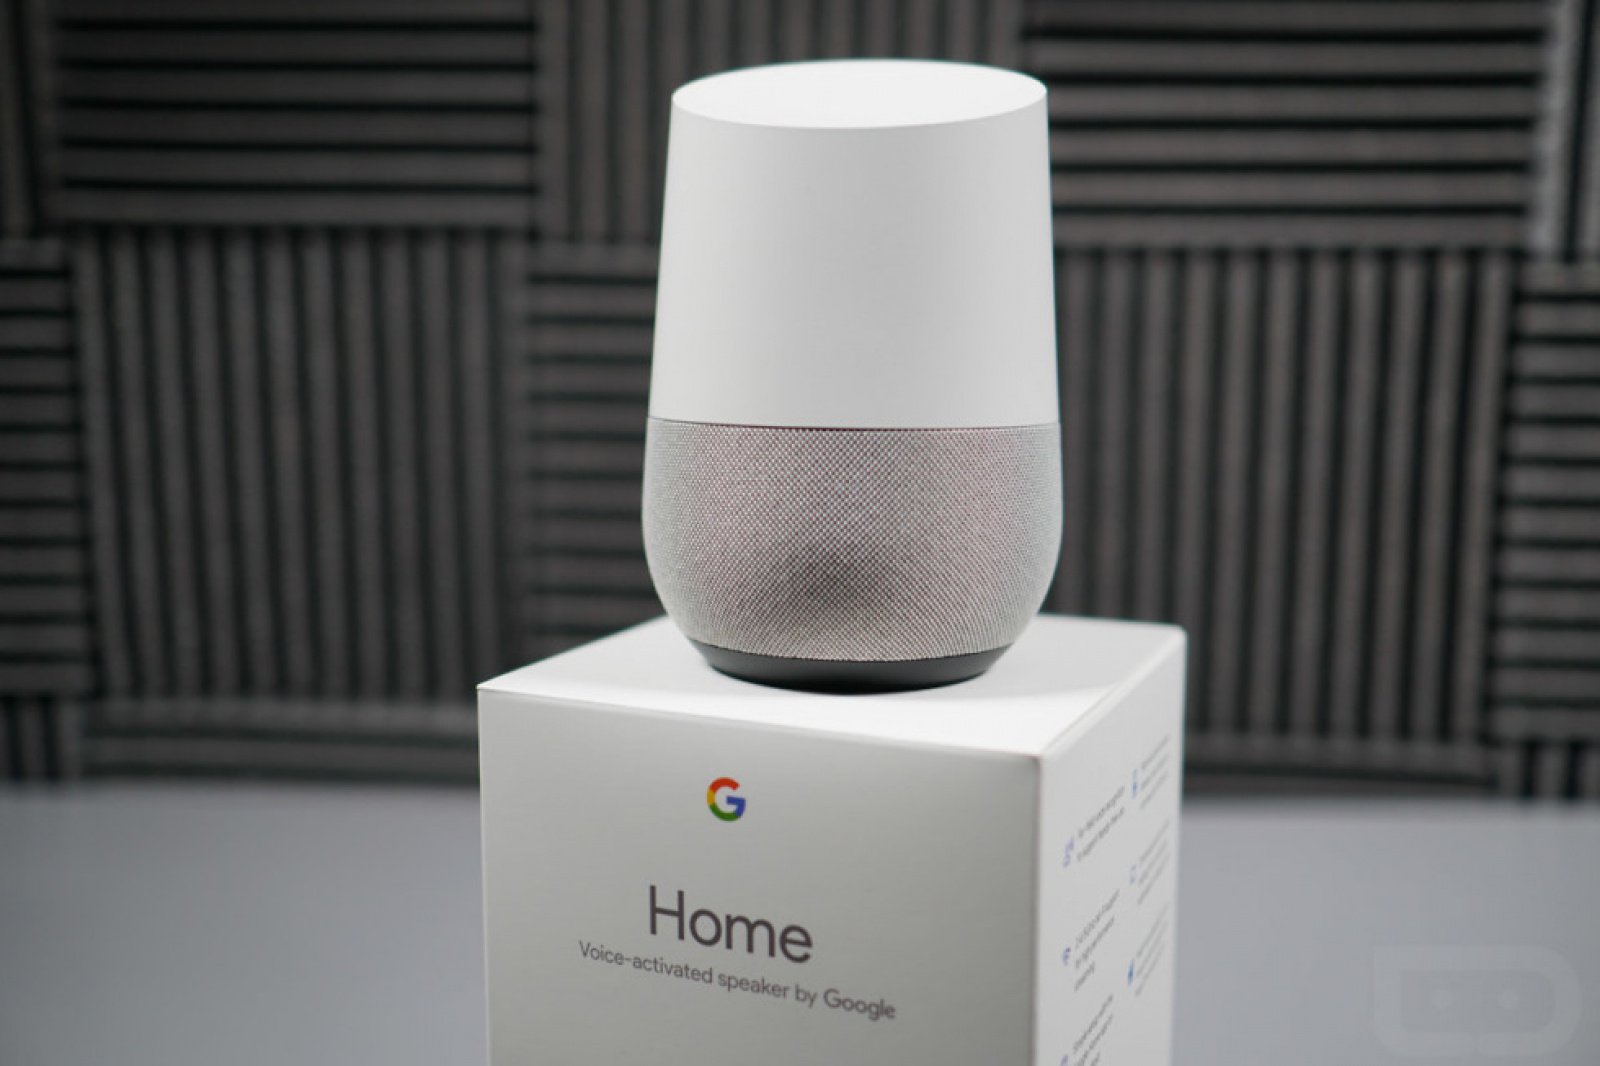 Son güncelleme nedeniyle bozulan Google Home'lar yenisiyle değiştirilecek